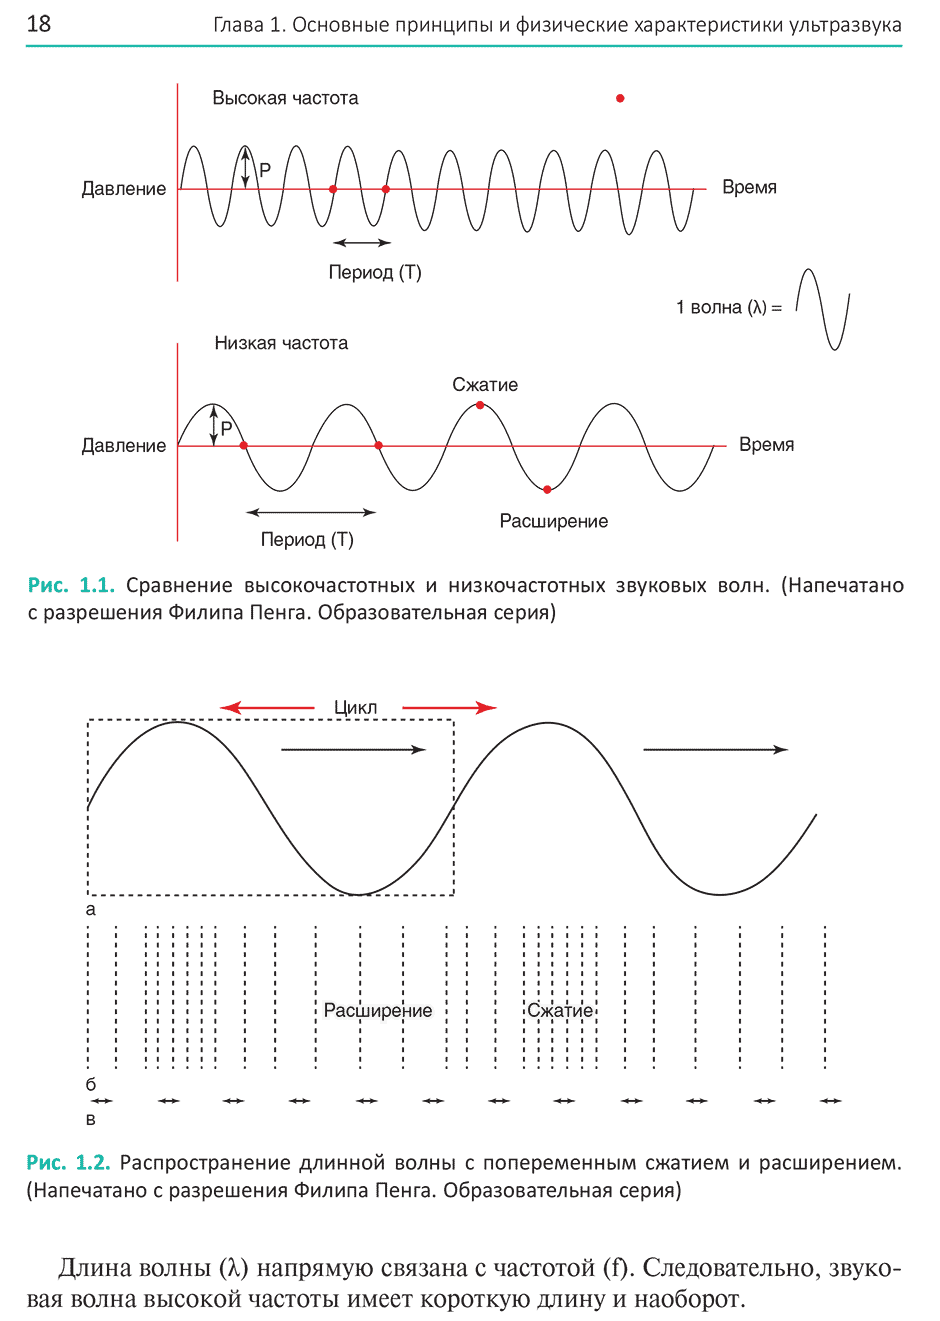 Рис. 1.2. Распространение длинной волны с попеременным сжатием и расширением.